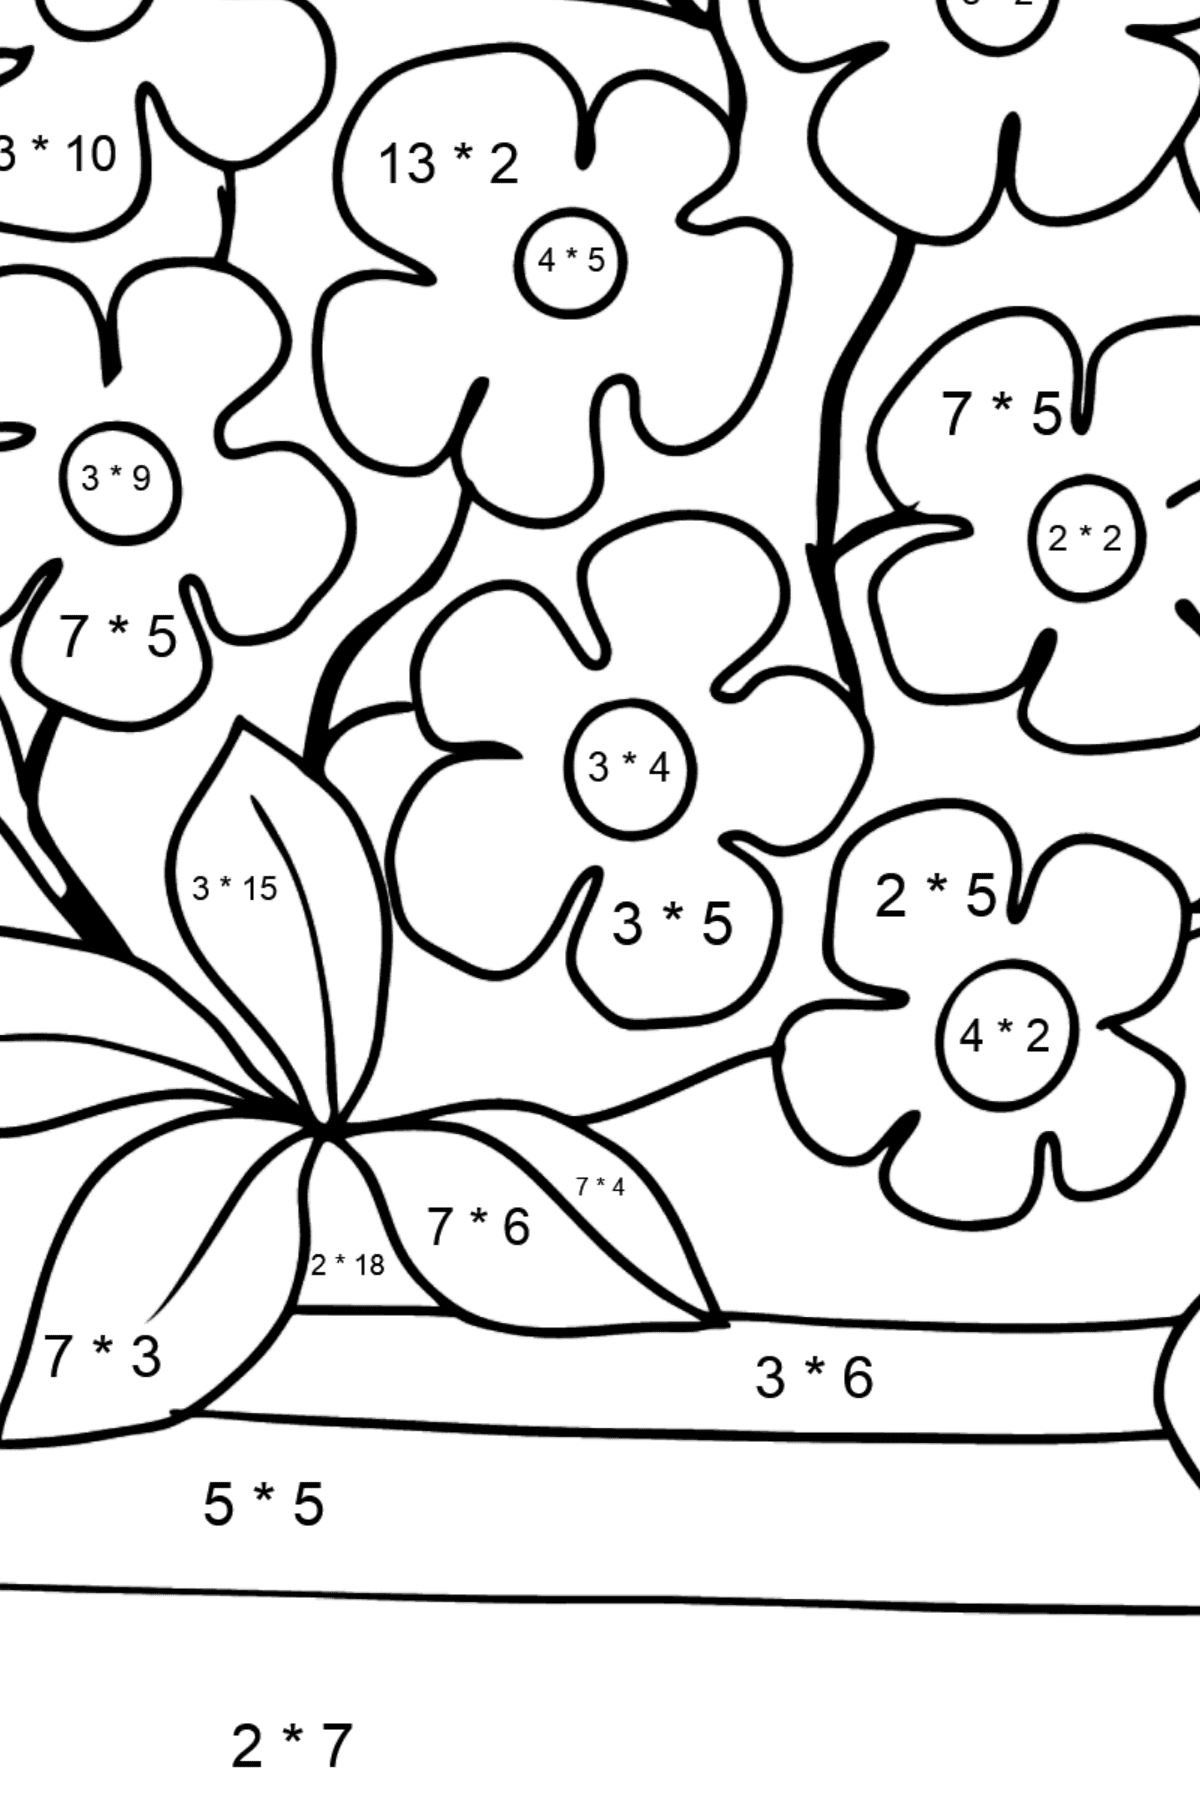 Dibujo de flores para colorear - Forget-me-nots - Colorear con Matemáticas - Multiplicaciones para Niños